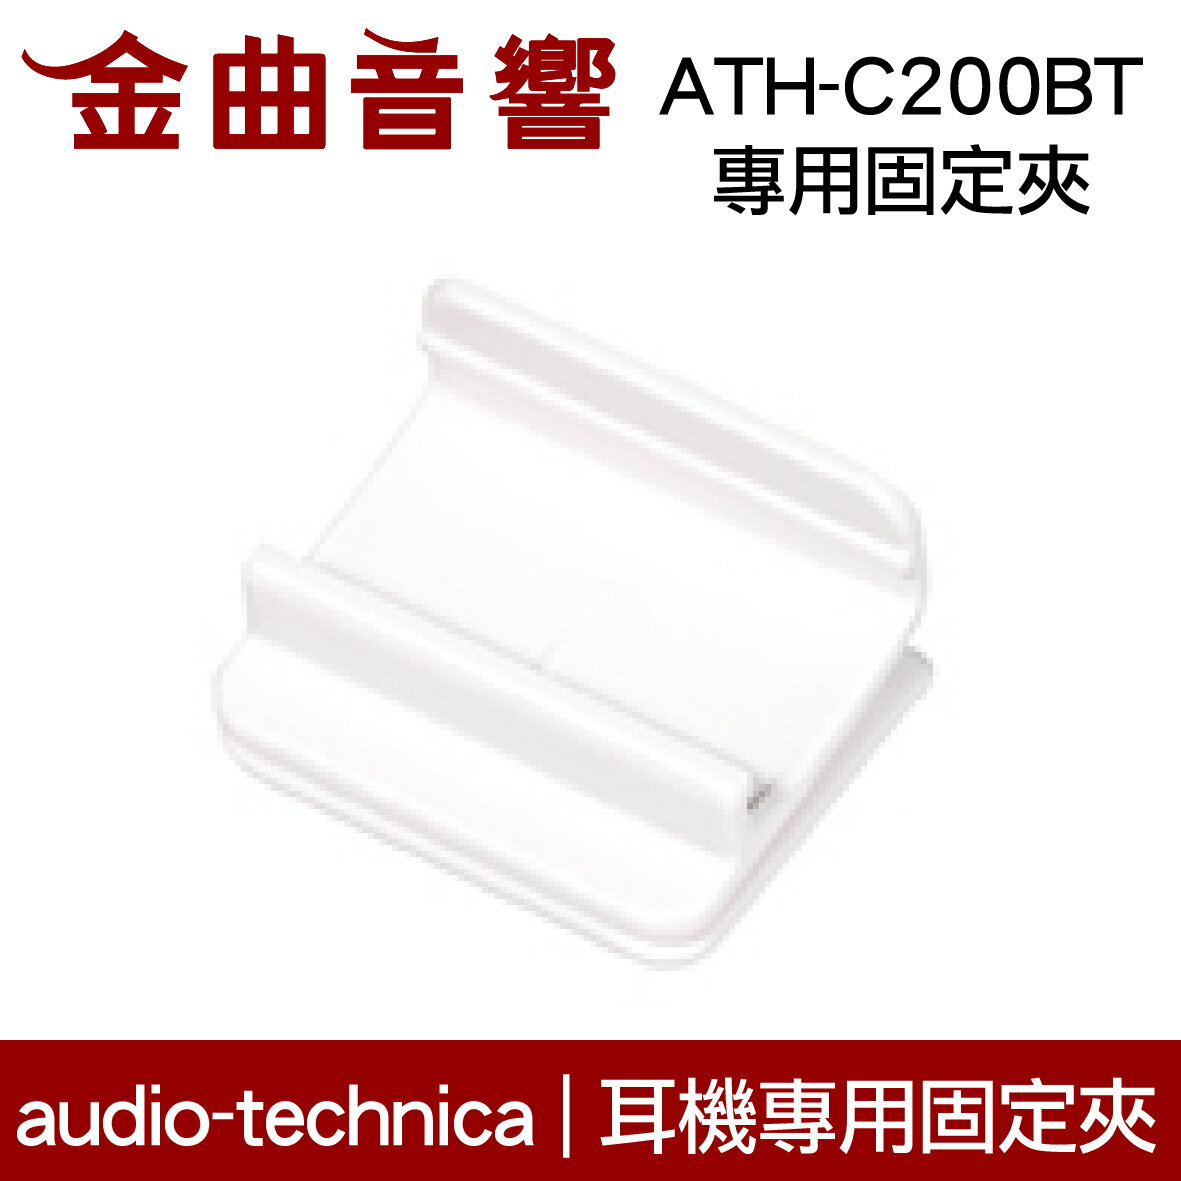 鐵三角 白色 固定夾 適用 ATH-C200BT 耳機 專用夾 | 金曲音響